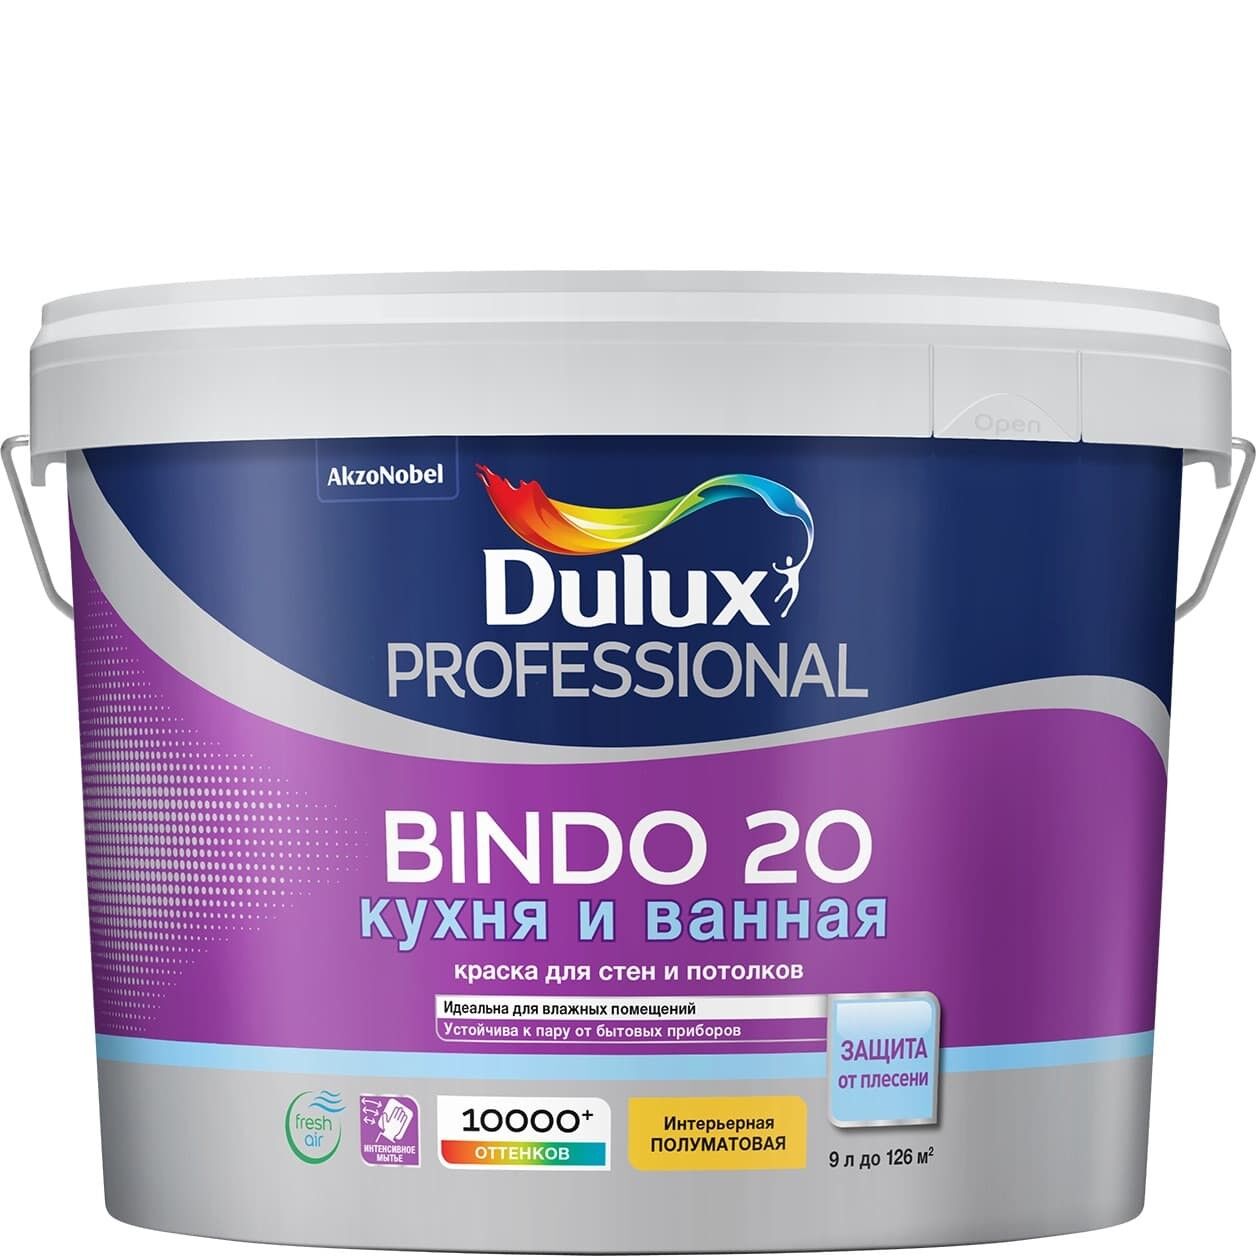 Краска Bindo 20 кухня и ванная , антибактериальная, интерьерная полуматовая